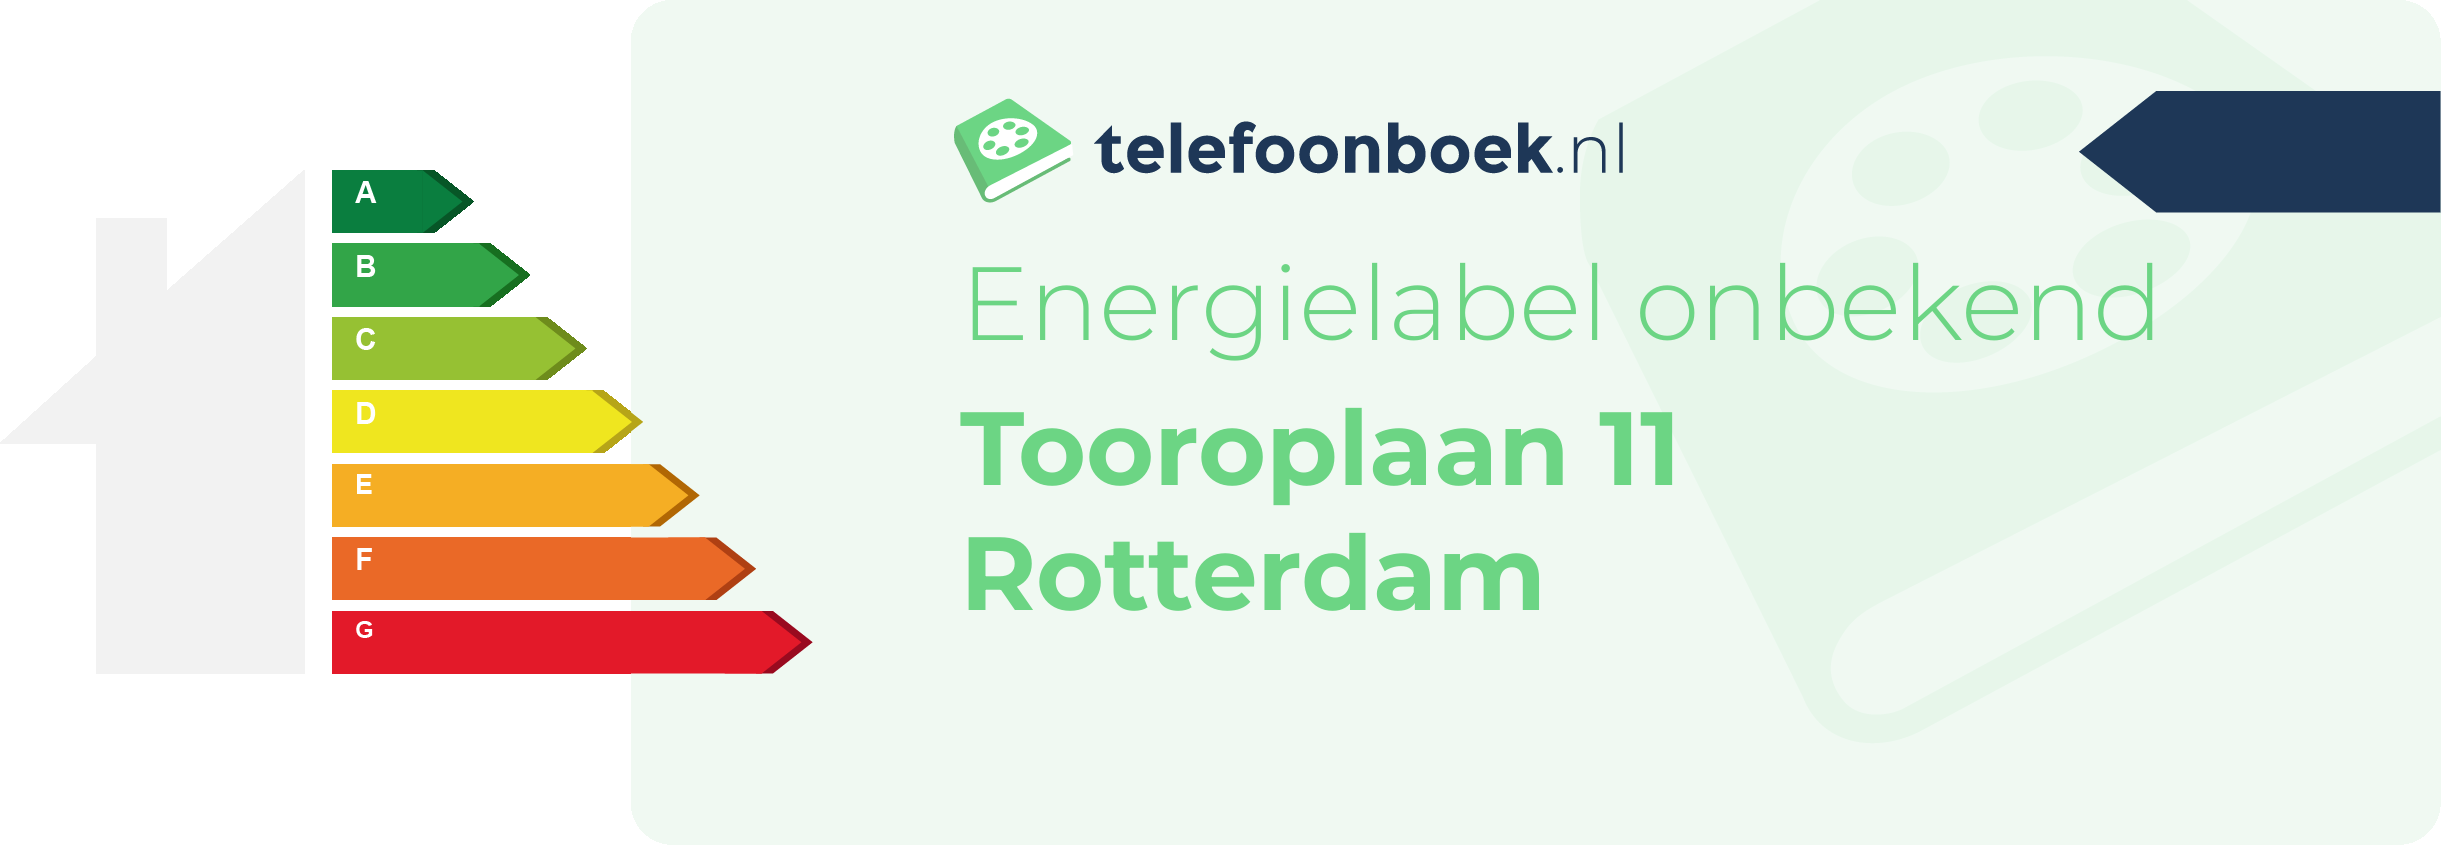 Energielabel Tooroplaan 11 Rotterdam